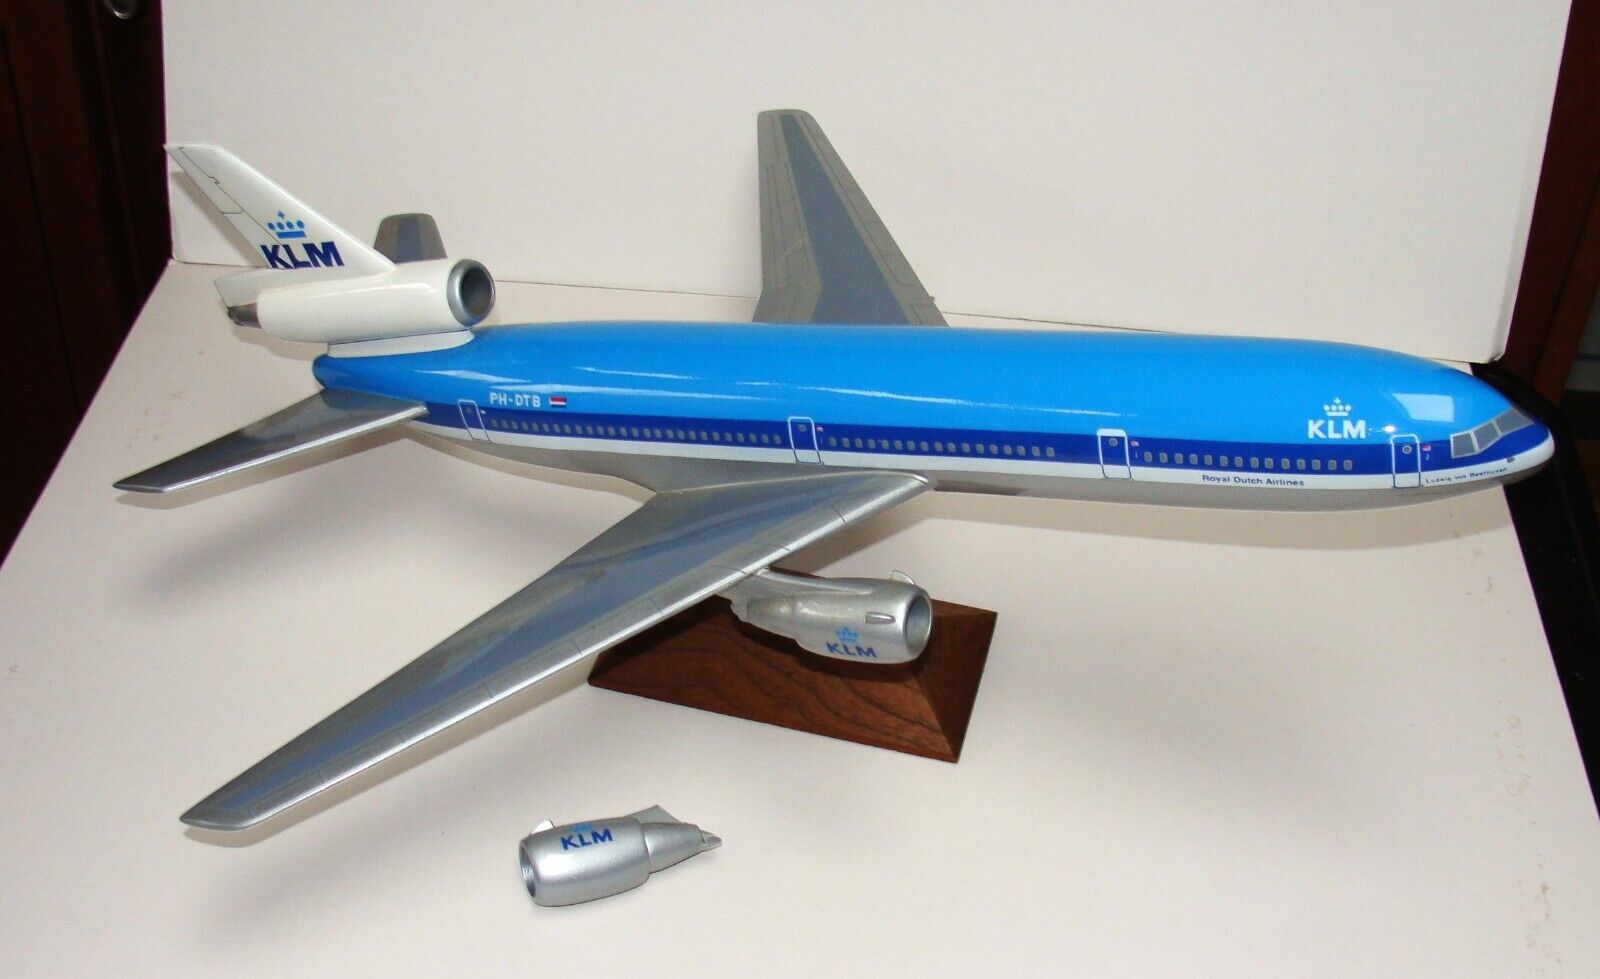 ORIG 1990's McDONNELL DOUGLAS MD11 - KLM AIRLINES - AGENCY DESK MODEL - PH-DT8